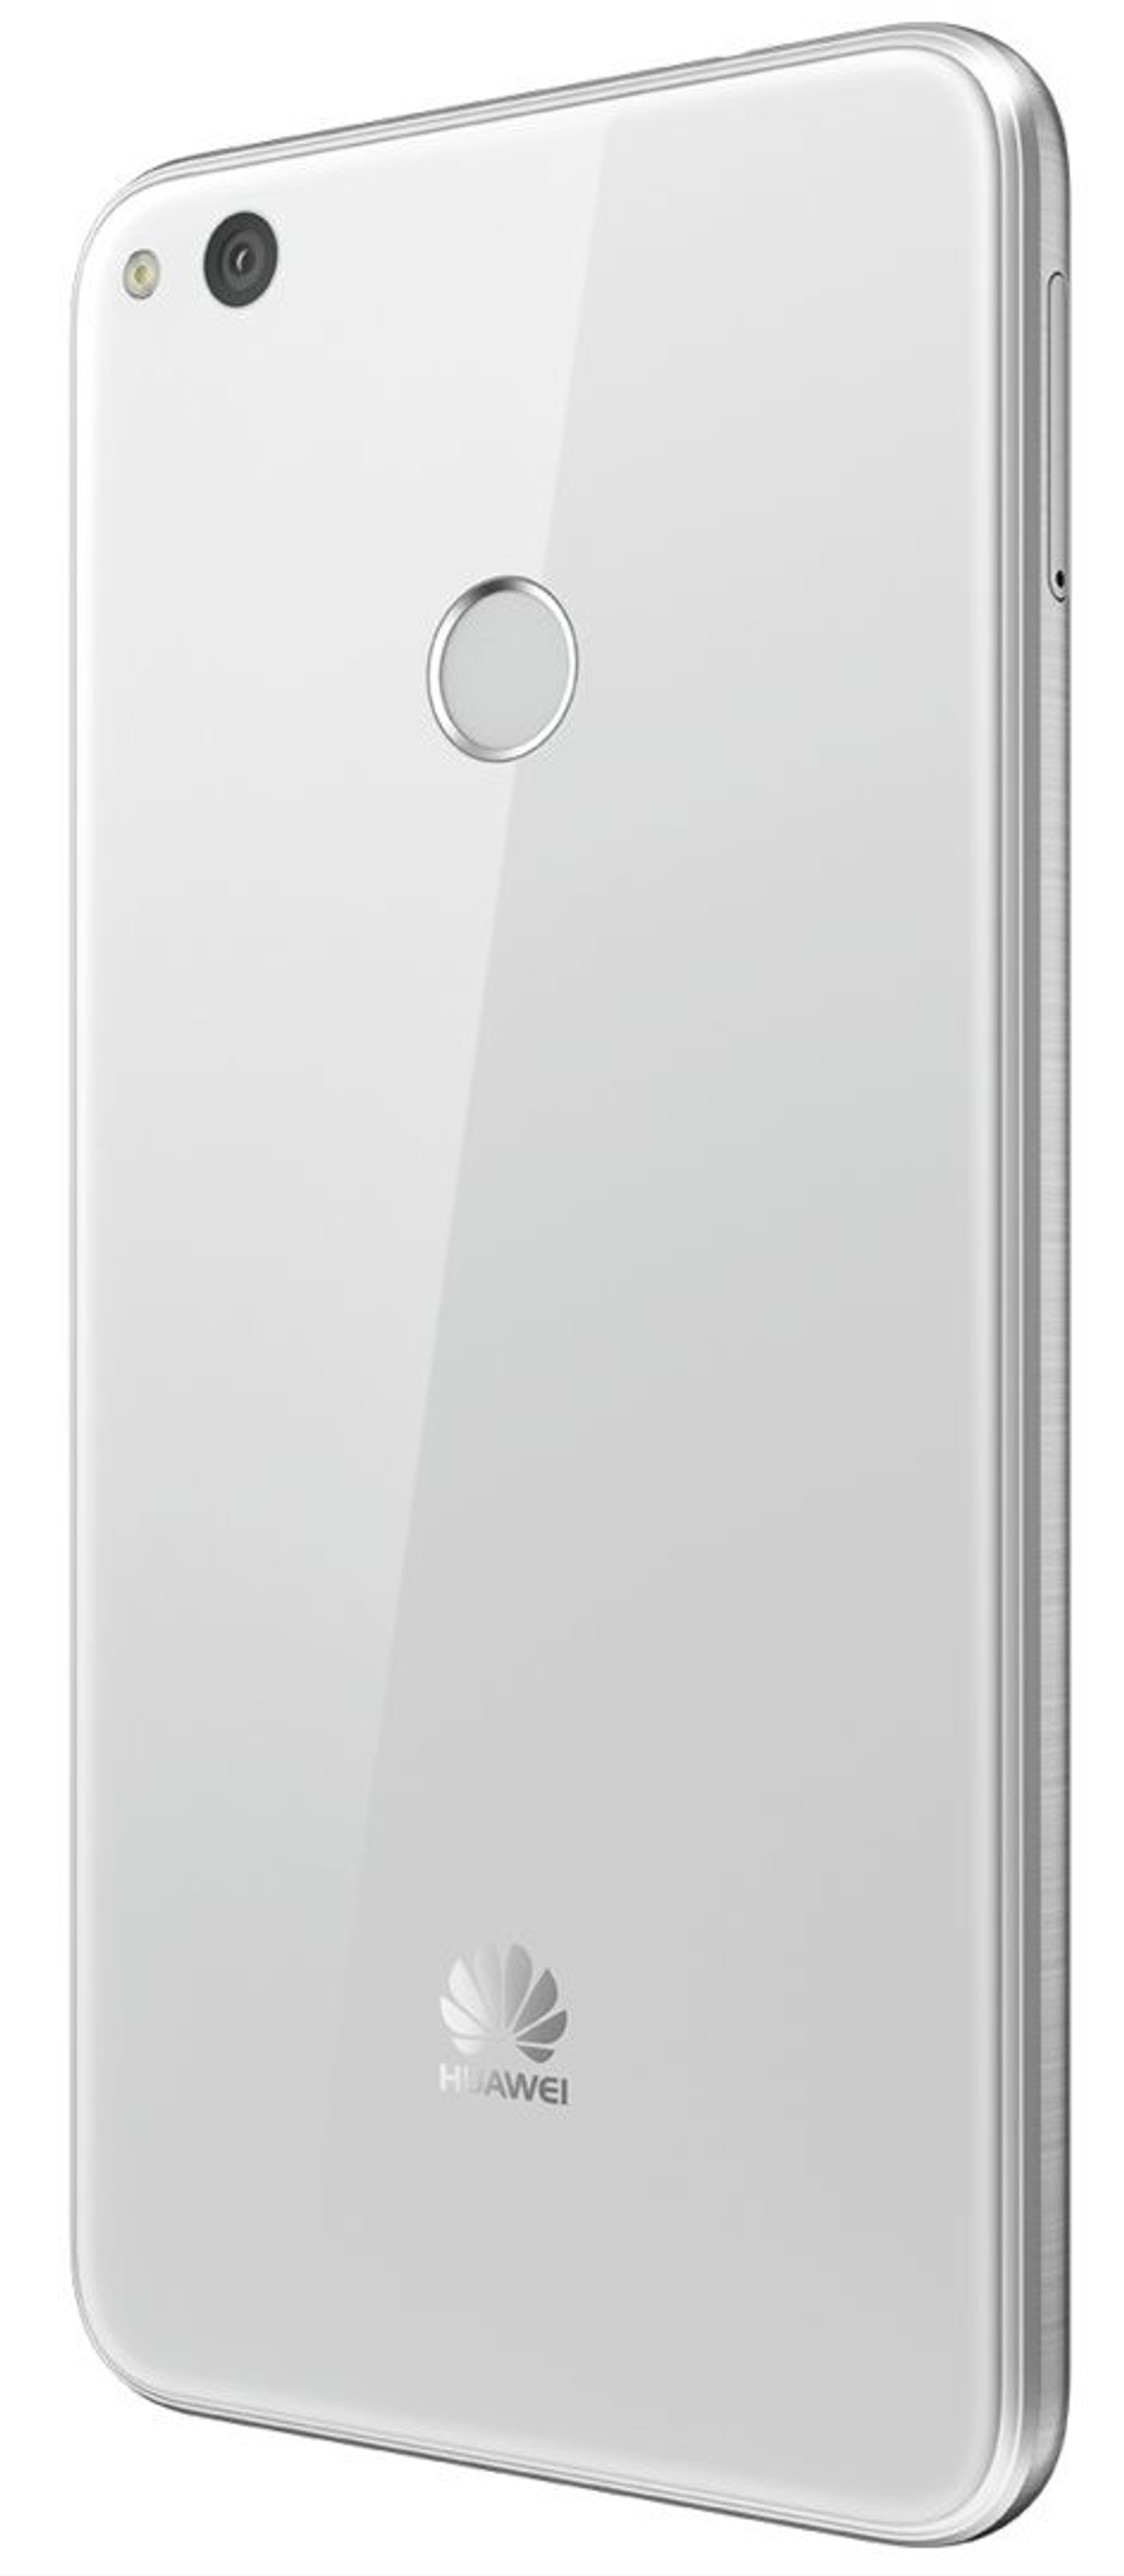 Lite GB Weiß SIM 2017 P8 HUAWEI 16 Dual